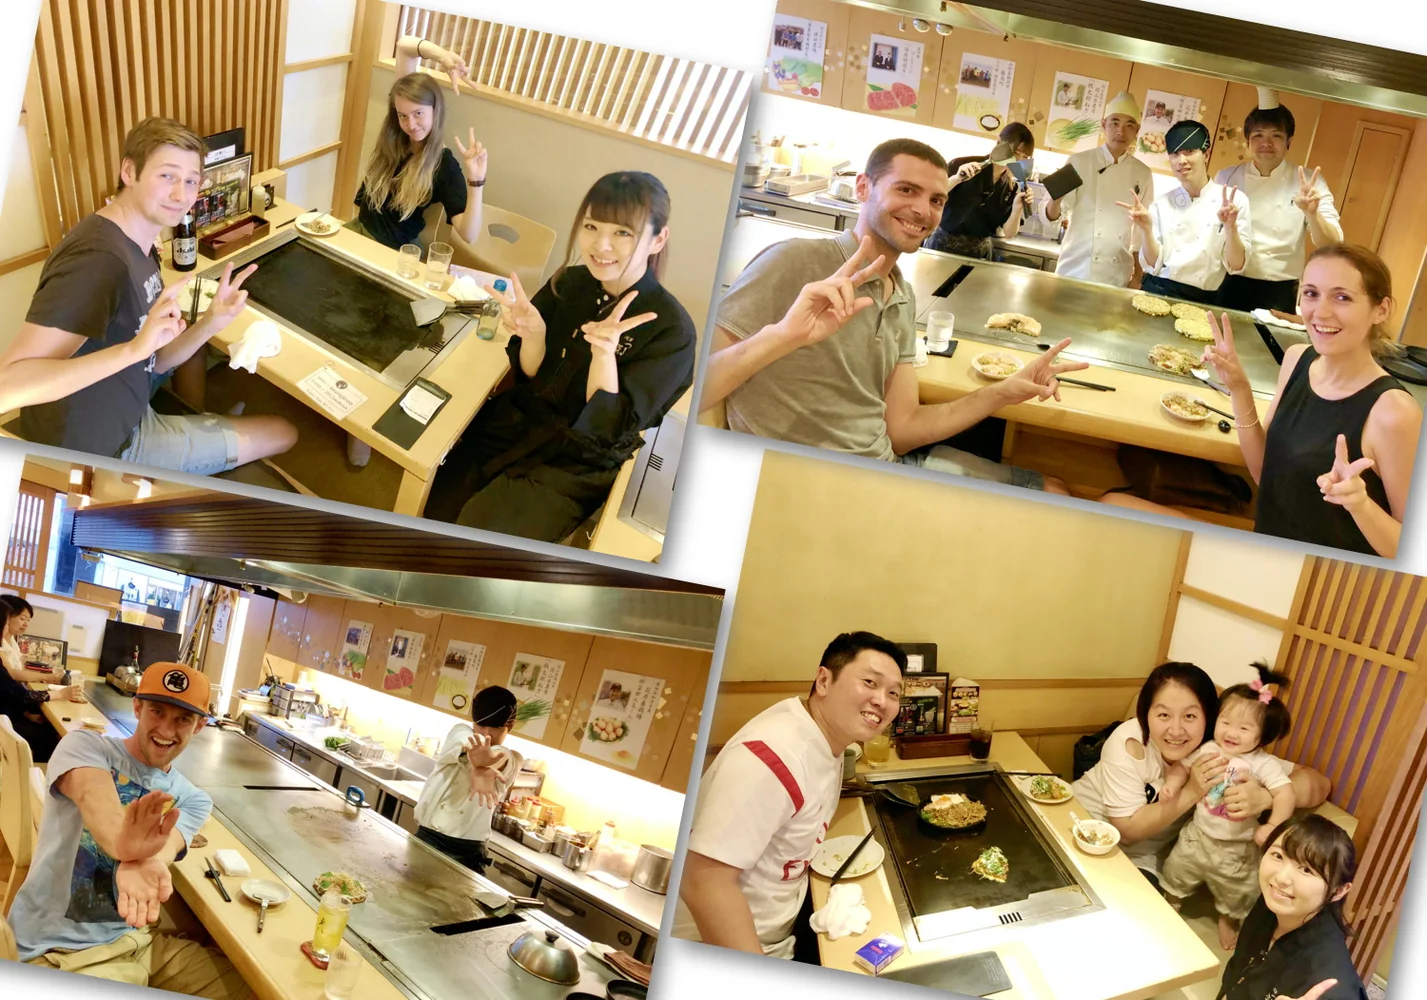 Book Tsurujiro (Hanare) in Asakusa for Teppanyaki or Monjayaki in Tokyo with an Okonomiyaki Course!